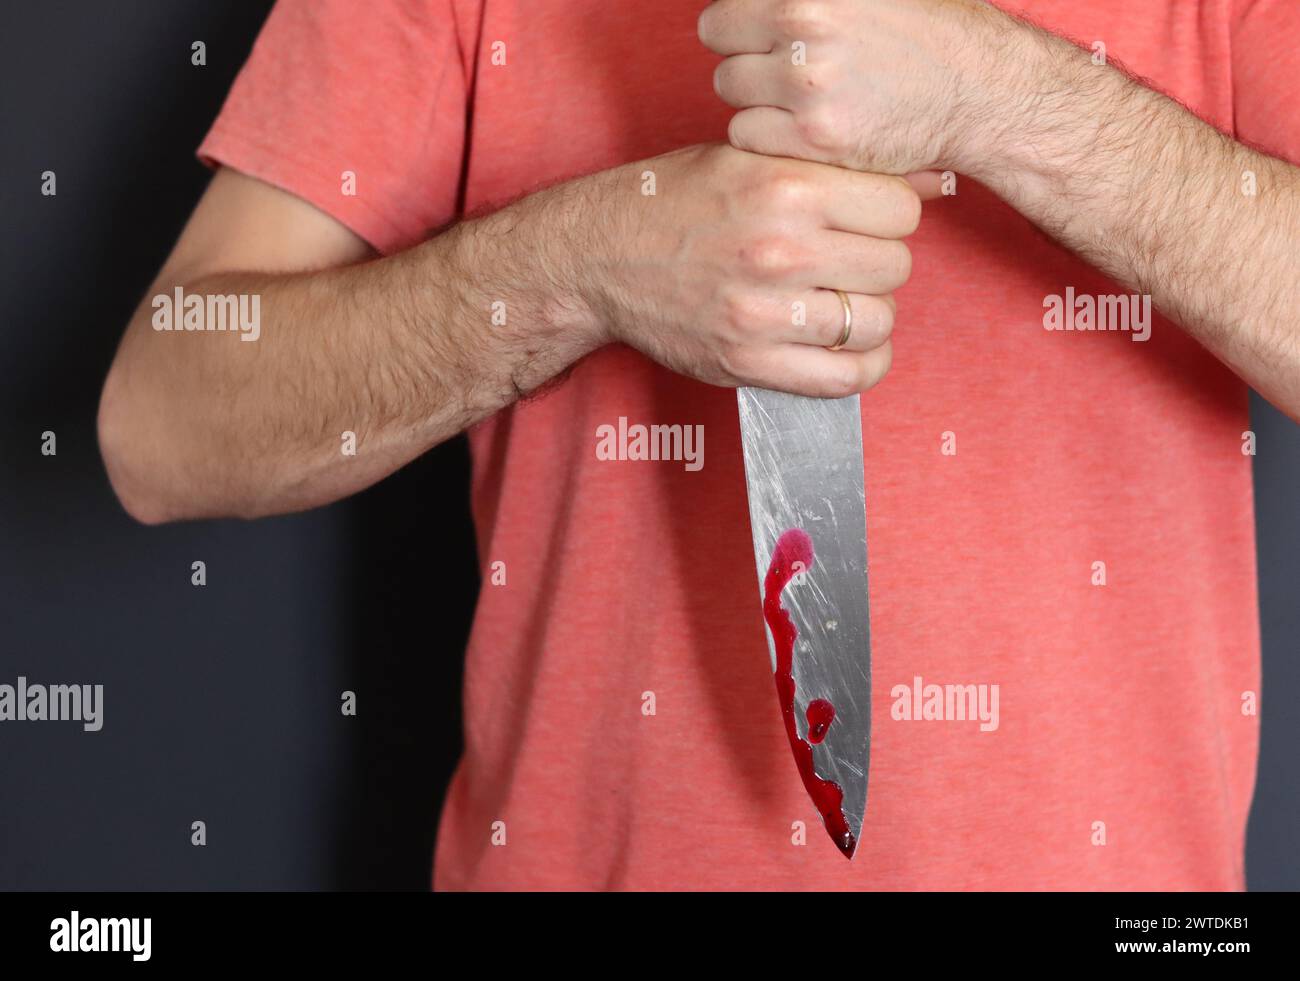 Homme tenant couteau avec du sang sur fond sombre, gros plan. Concept de violence domestique Banque D'Images